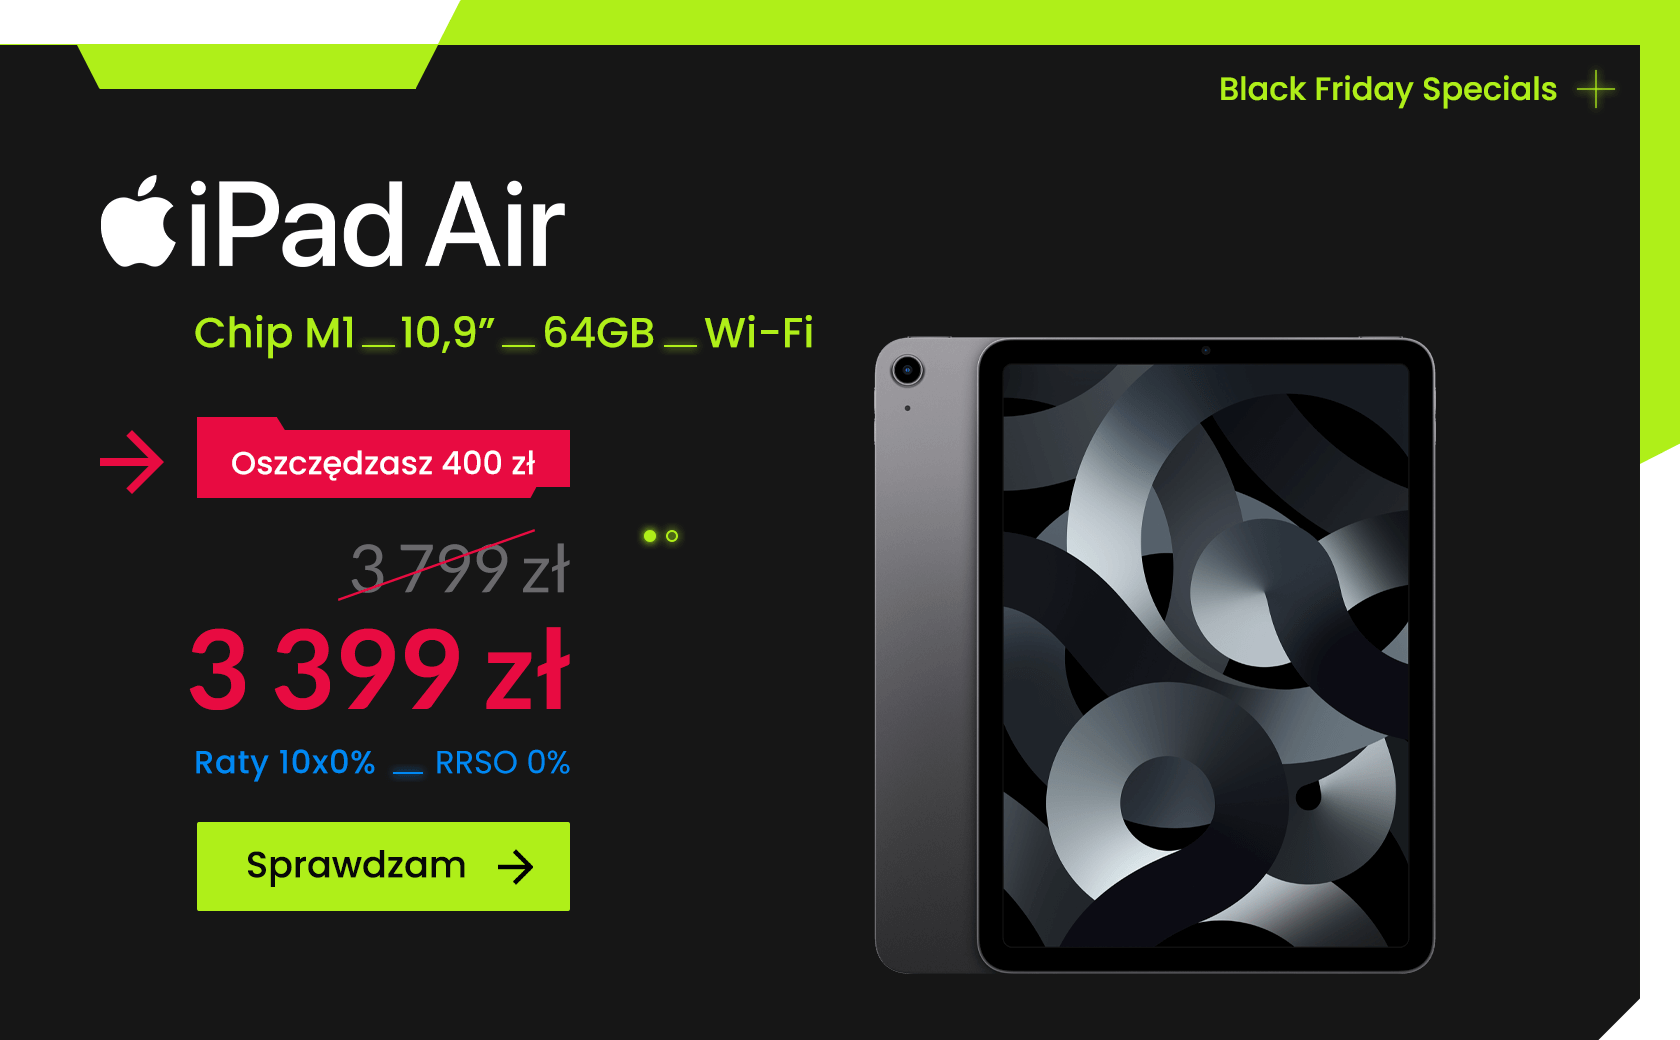 Black Friday Specials - iPad Air